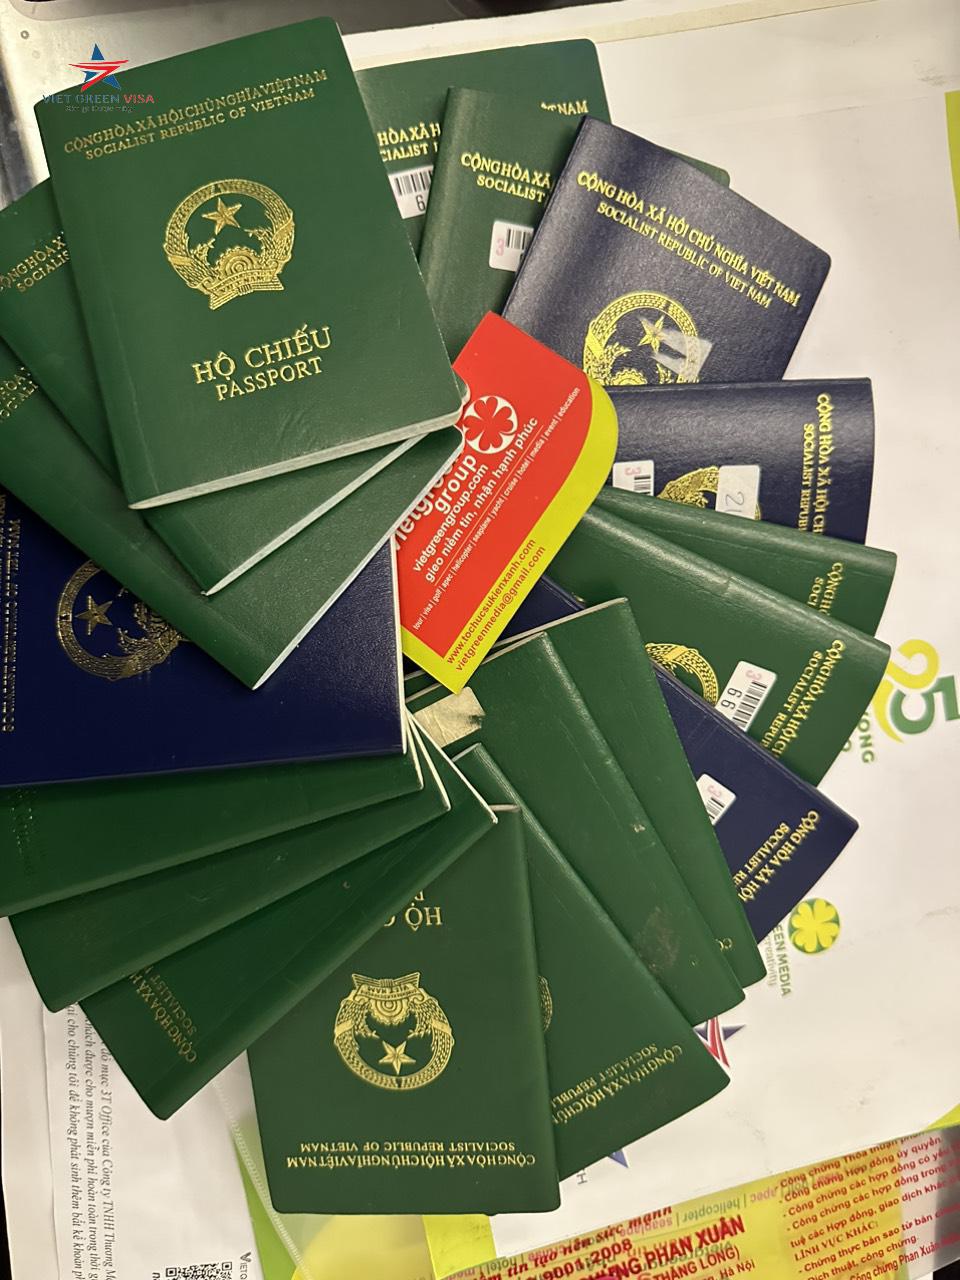 Dịch vụ làm hộ chiếu nhanh tại Kon Tum